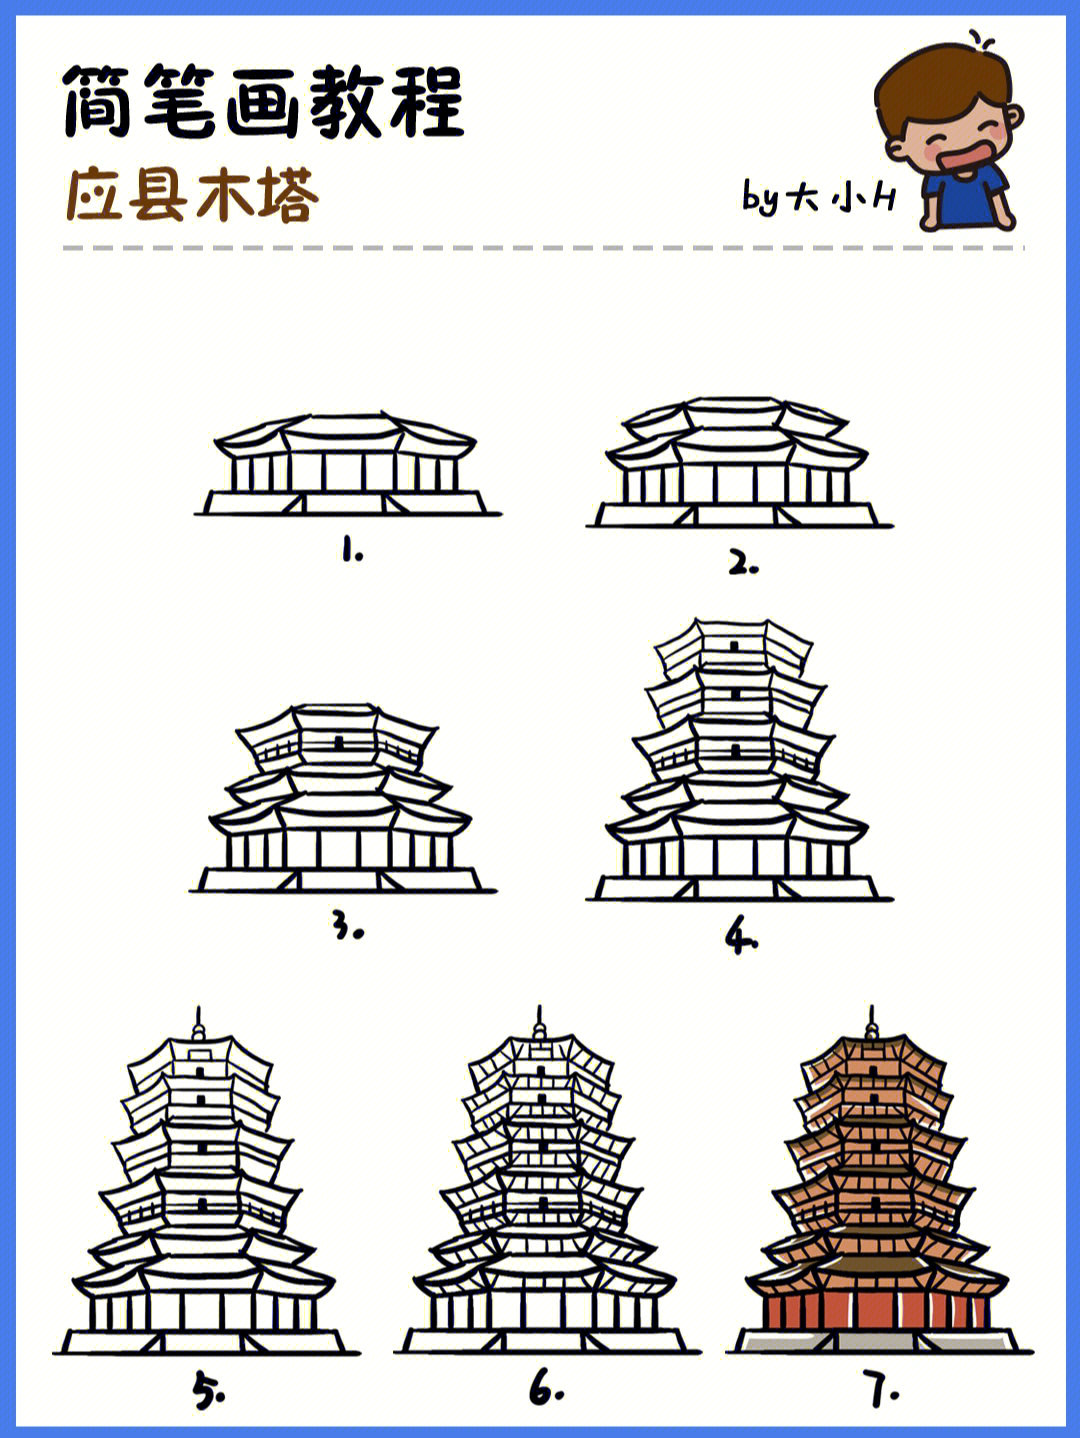 是中国现存最高最古的一座木构塔式建筑,全国重点文物保护单位